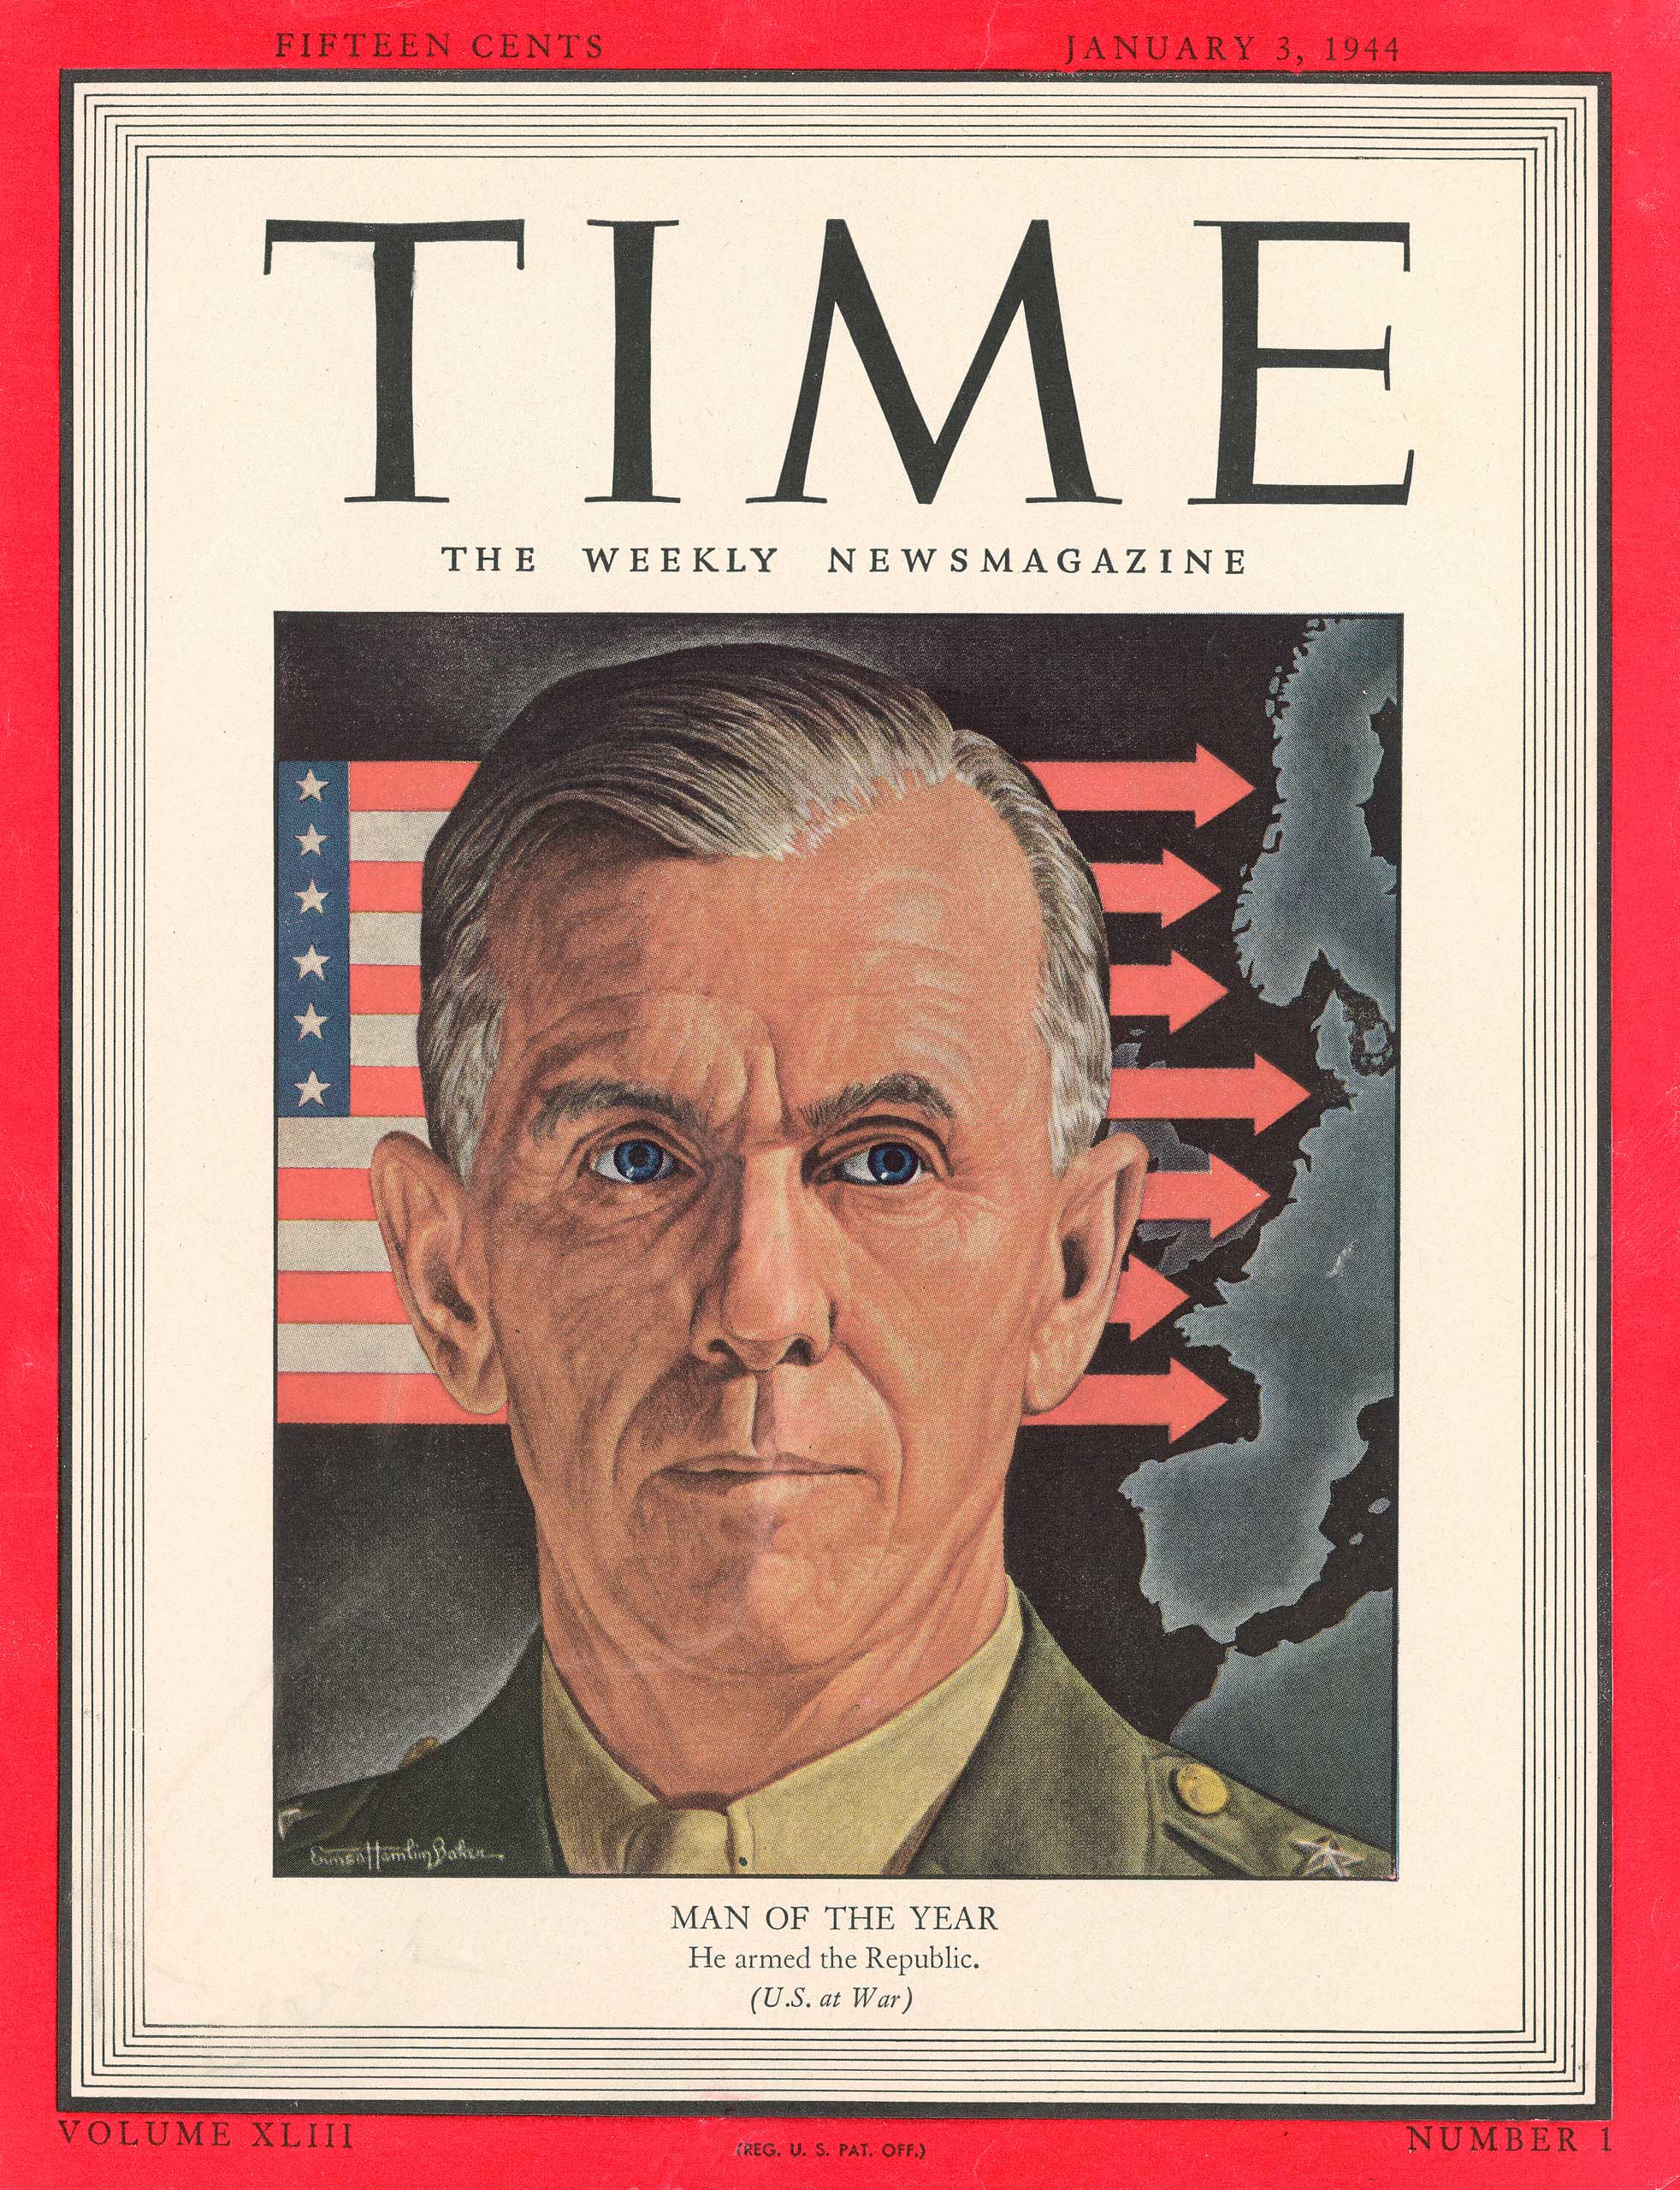 1943: George Marshall